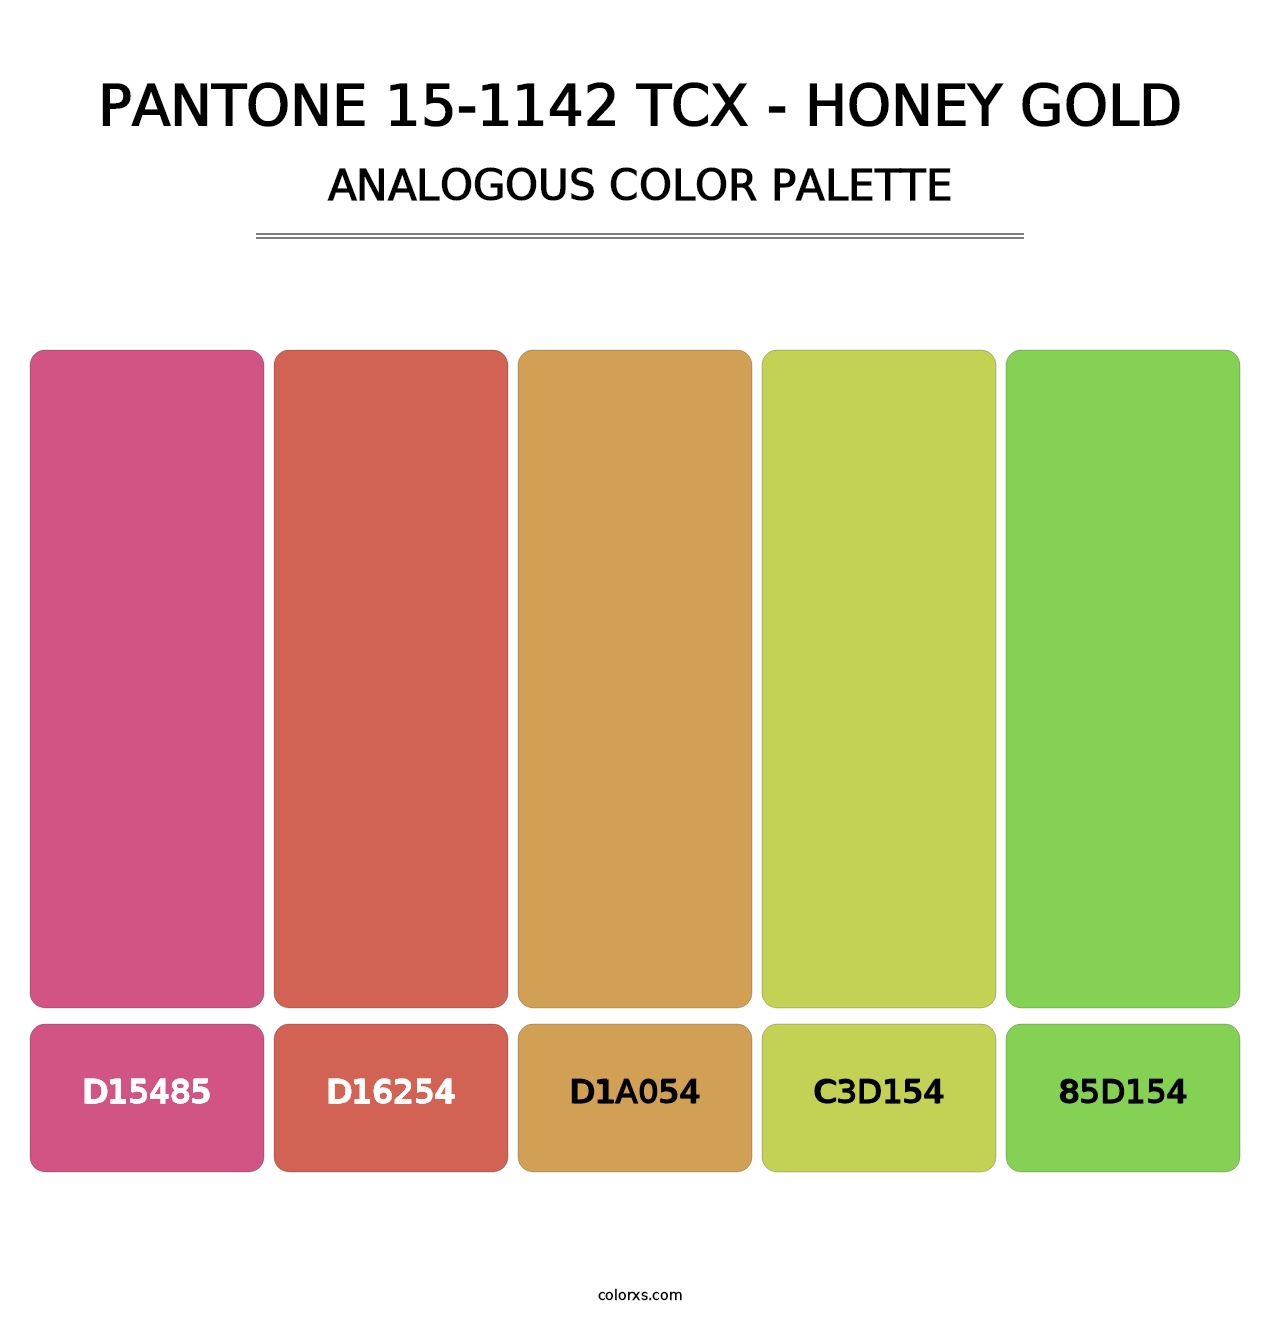 PANTONE 15-1142 TCX - Honey Gold - Analogous Color Palette